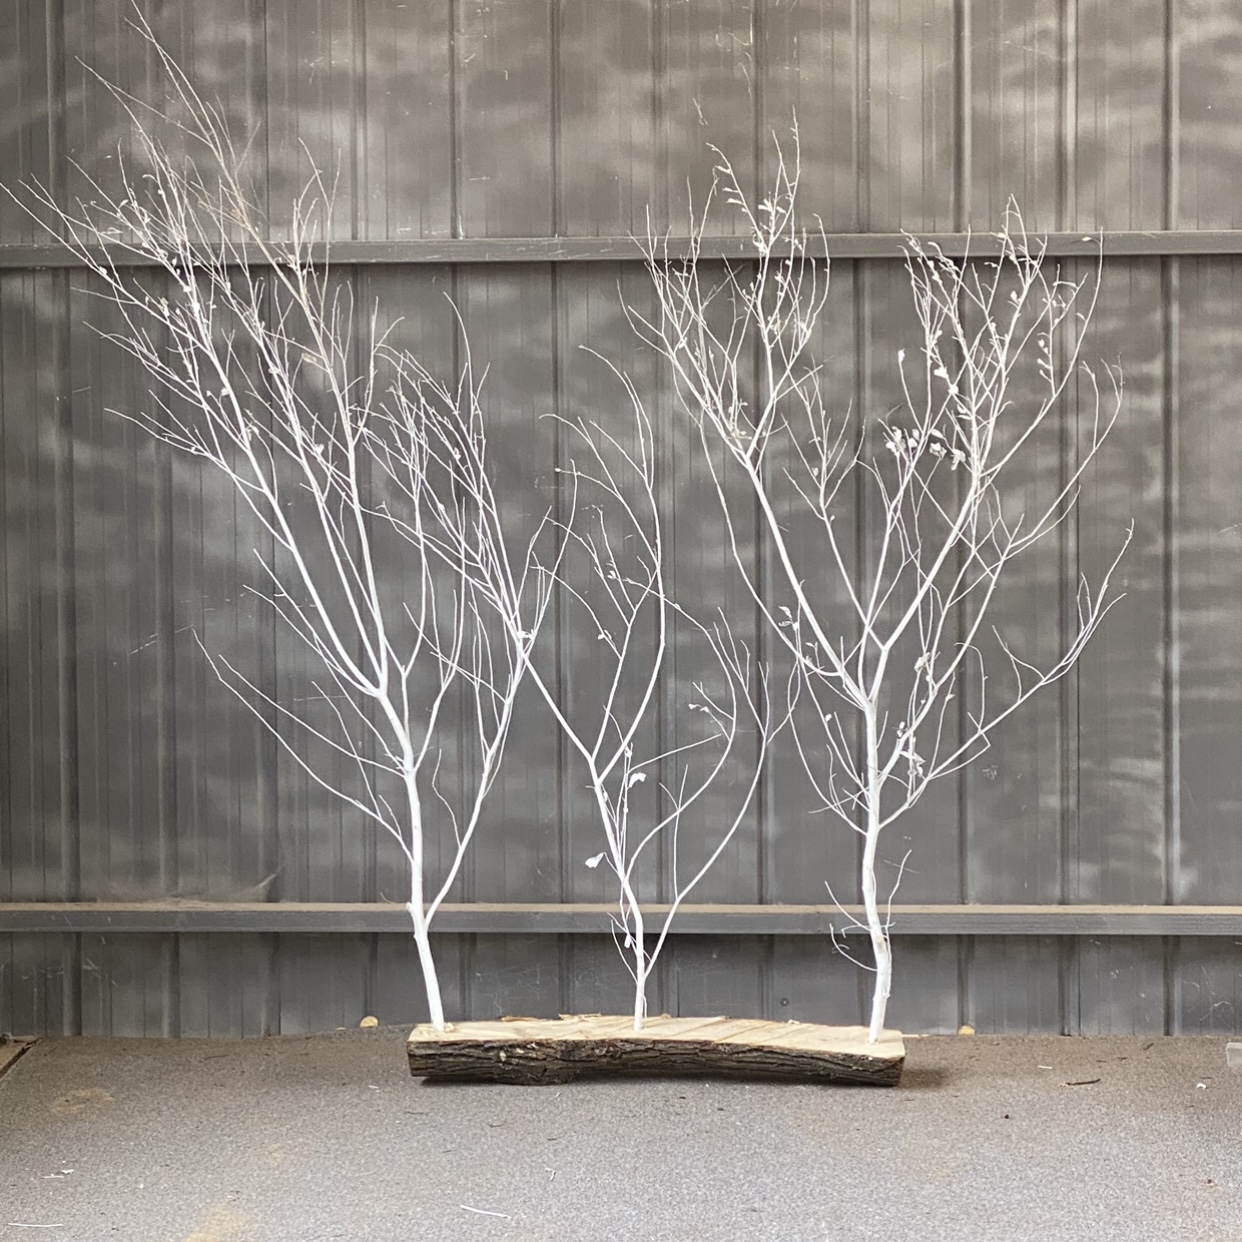 原木树枝干树枝 树枝造景 室内造型树枝枯树枝装饰 去皮树枝 橱窗 - 图1